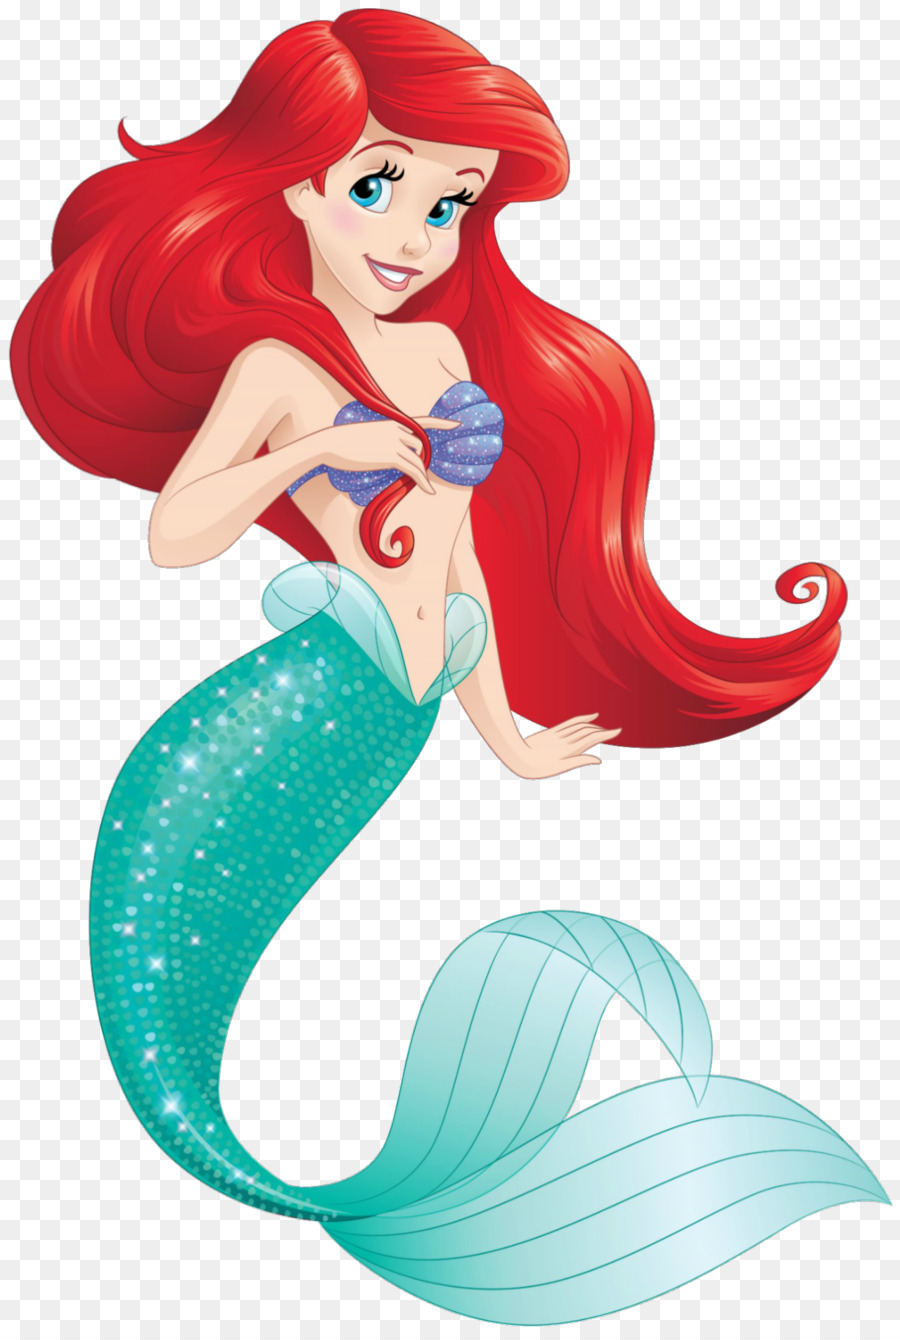 Ariel Flounder Belle The Little Mermaid Disney Princess - Ariel PNG Transparent Images png download - 1280*1902 - Free Transparent  png Download.